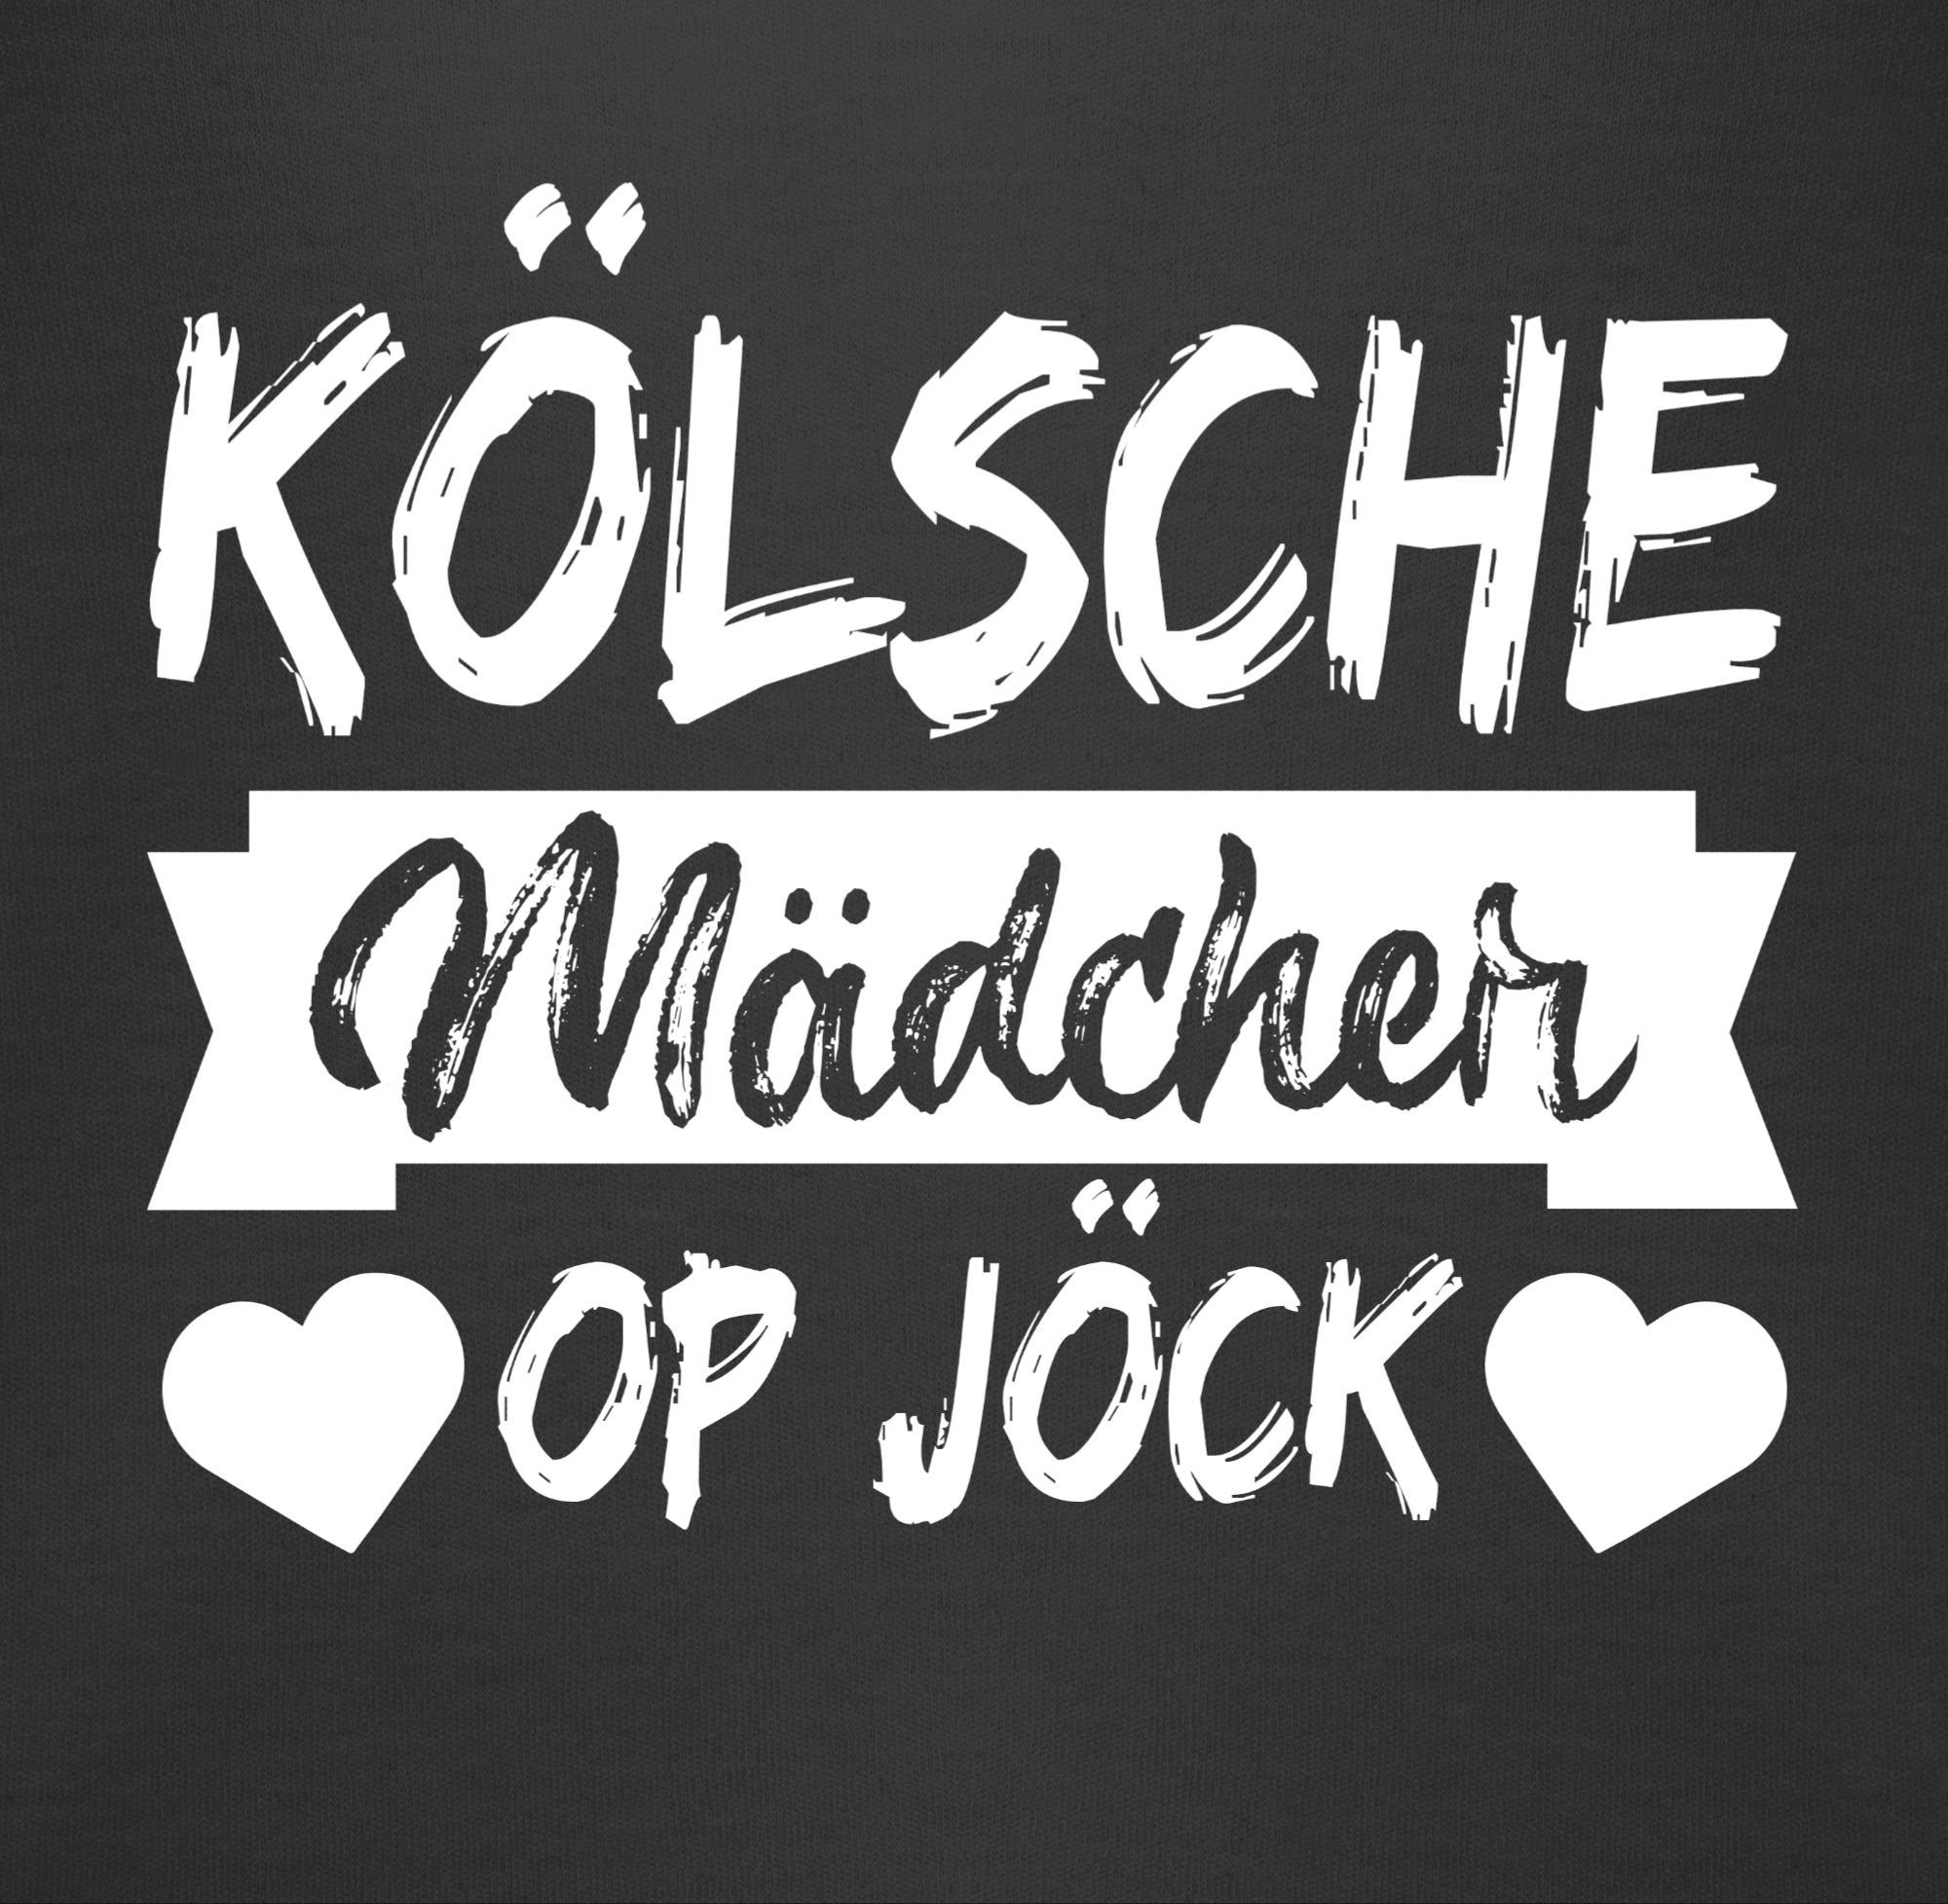 Karneval & Kölsche Schwarz - weiß Sprichwort op Shirtbody Mädcher Jöck 2 Fasching Shirtracer - Kölner